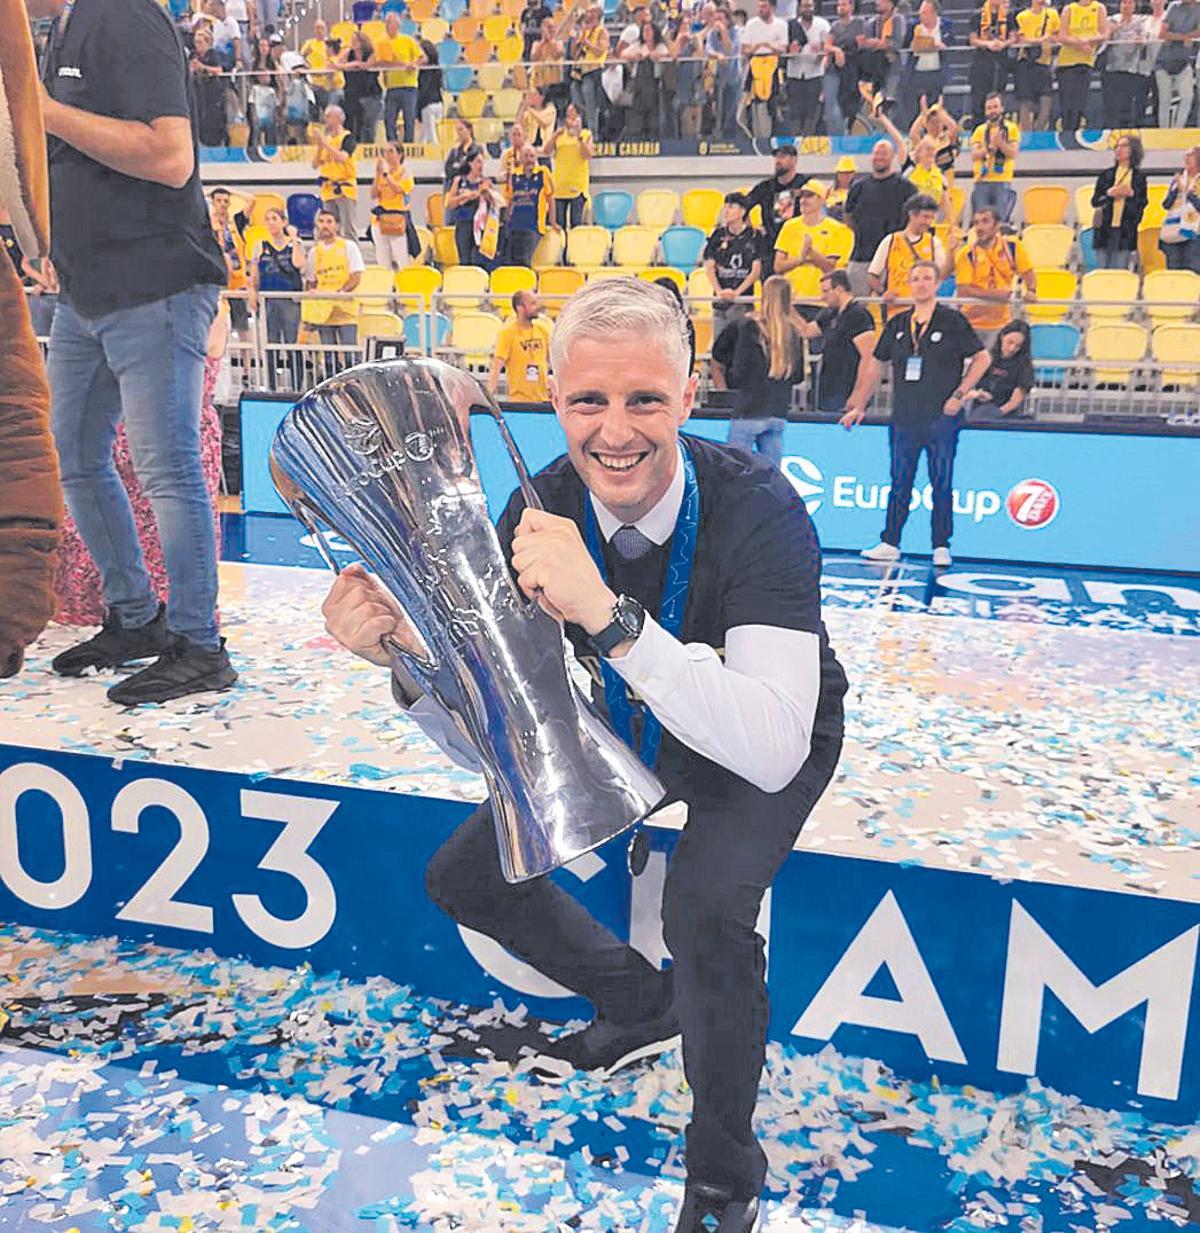 Manuel Peña posa sonriente con el trofeo de ganador de la Eurocup.